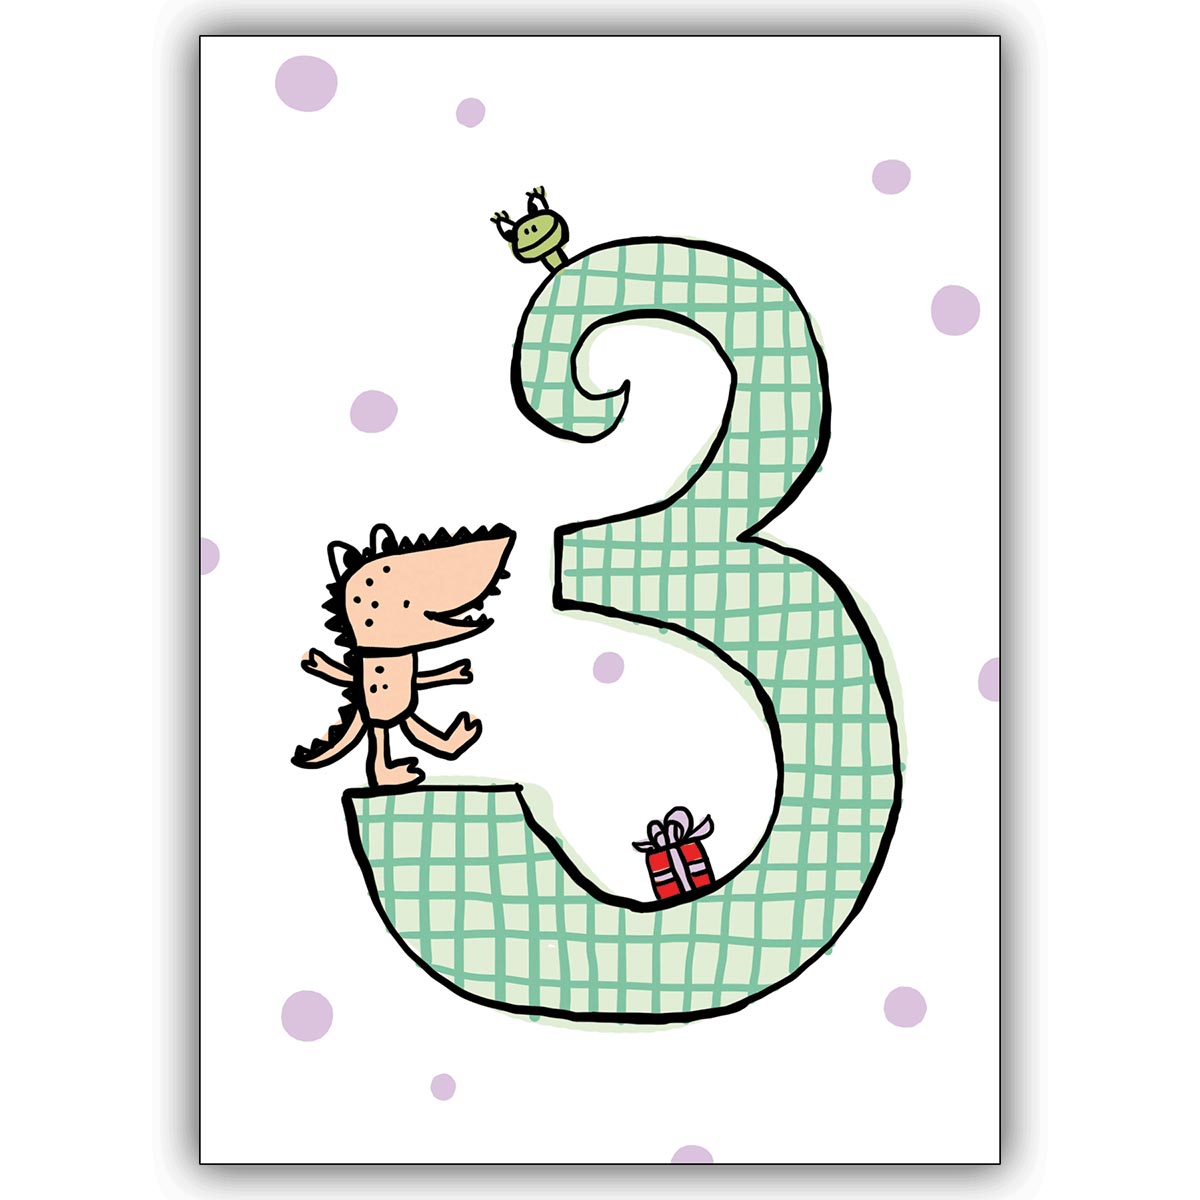 Tolle fröhliche Kinder Glückwunsch Karte zum dritten Geburtstag